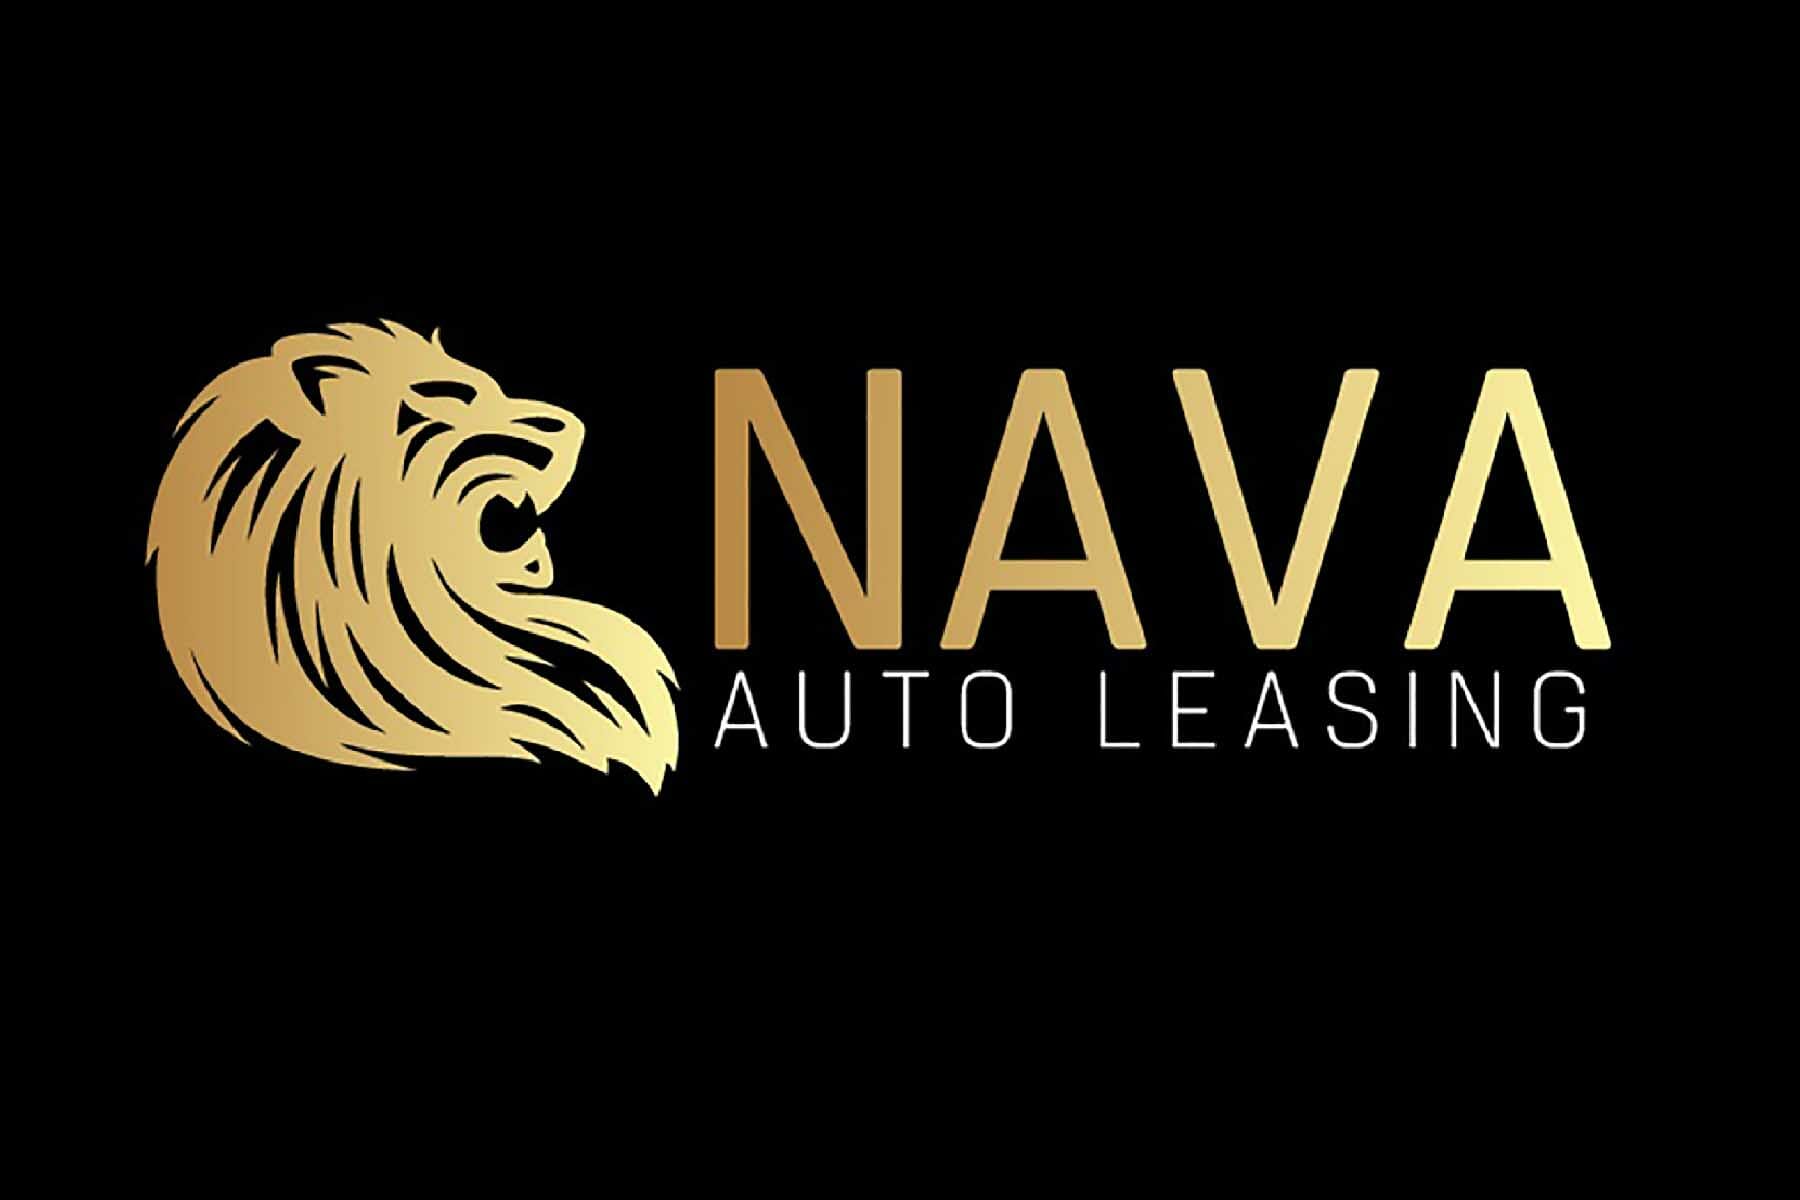 NAVA Auto Leasing - kupno, sprzedaż, leasing samochodów - bez kosztów dla klienta!